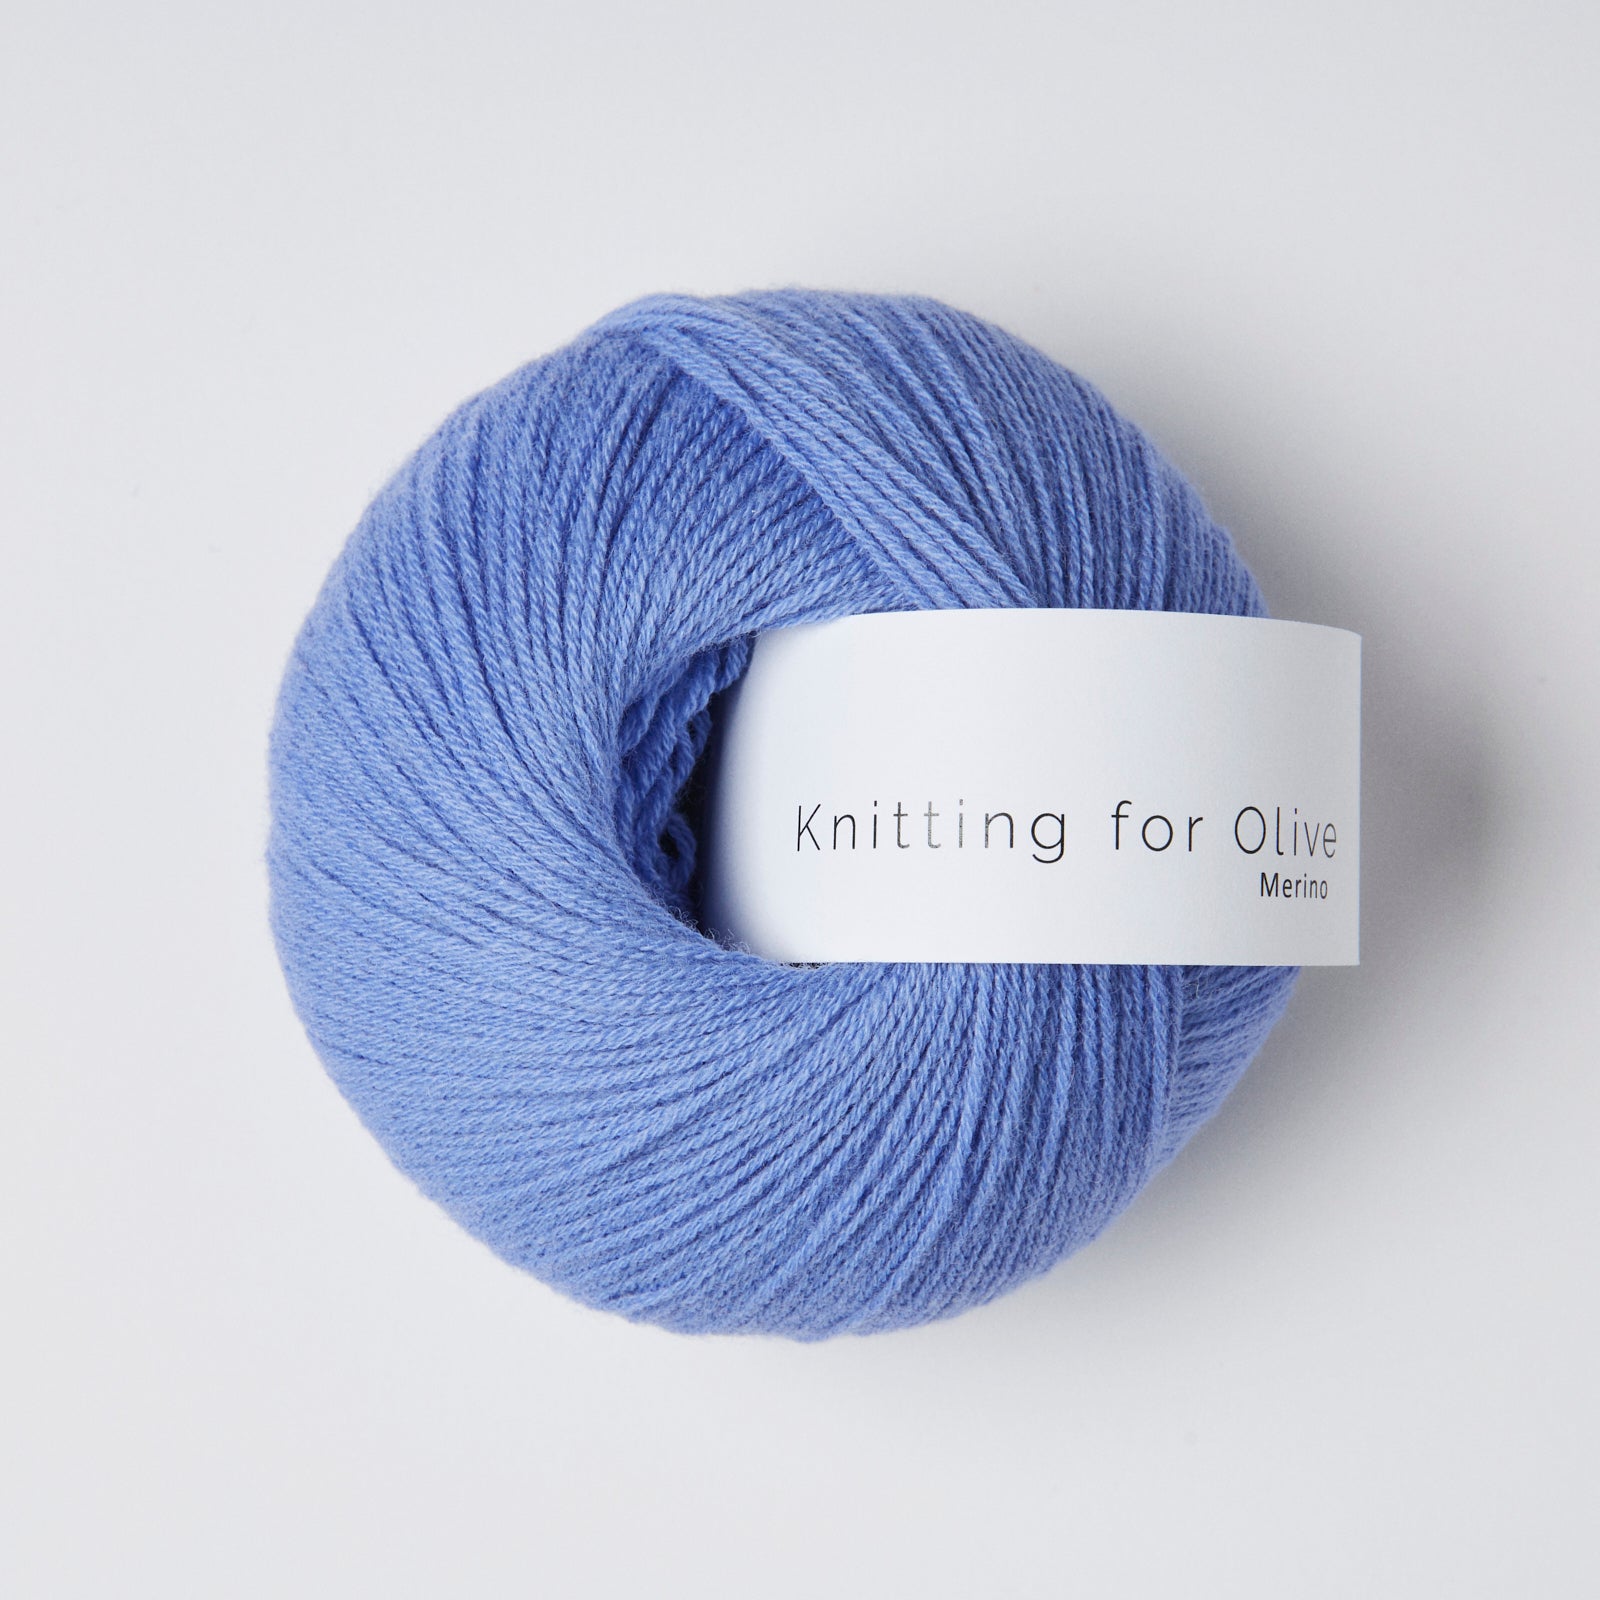 Knitting for Olive Merino - Lavendelblau